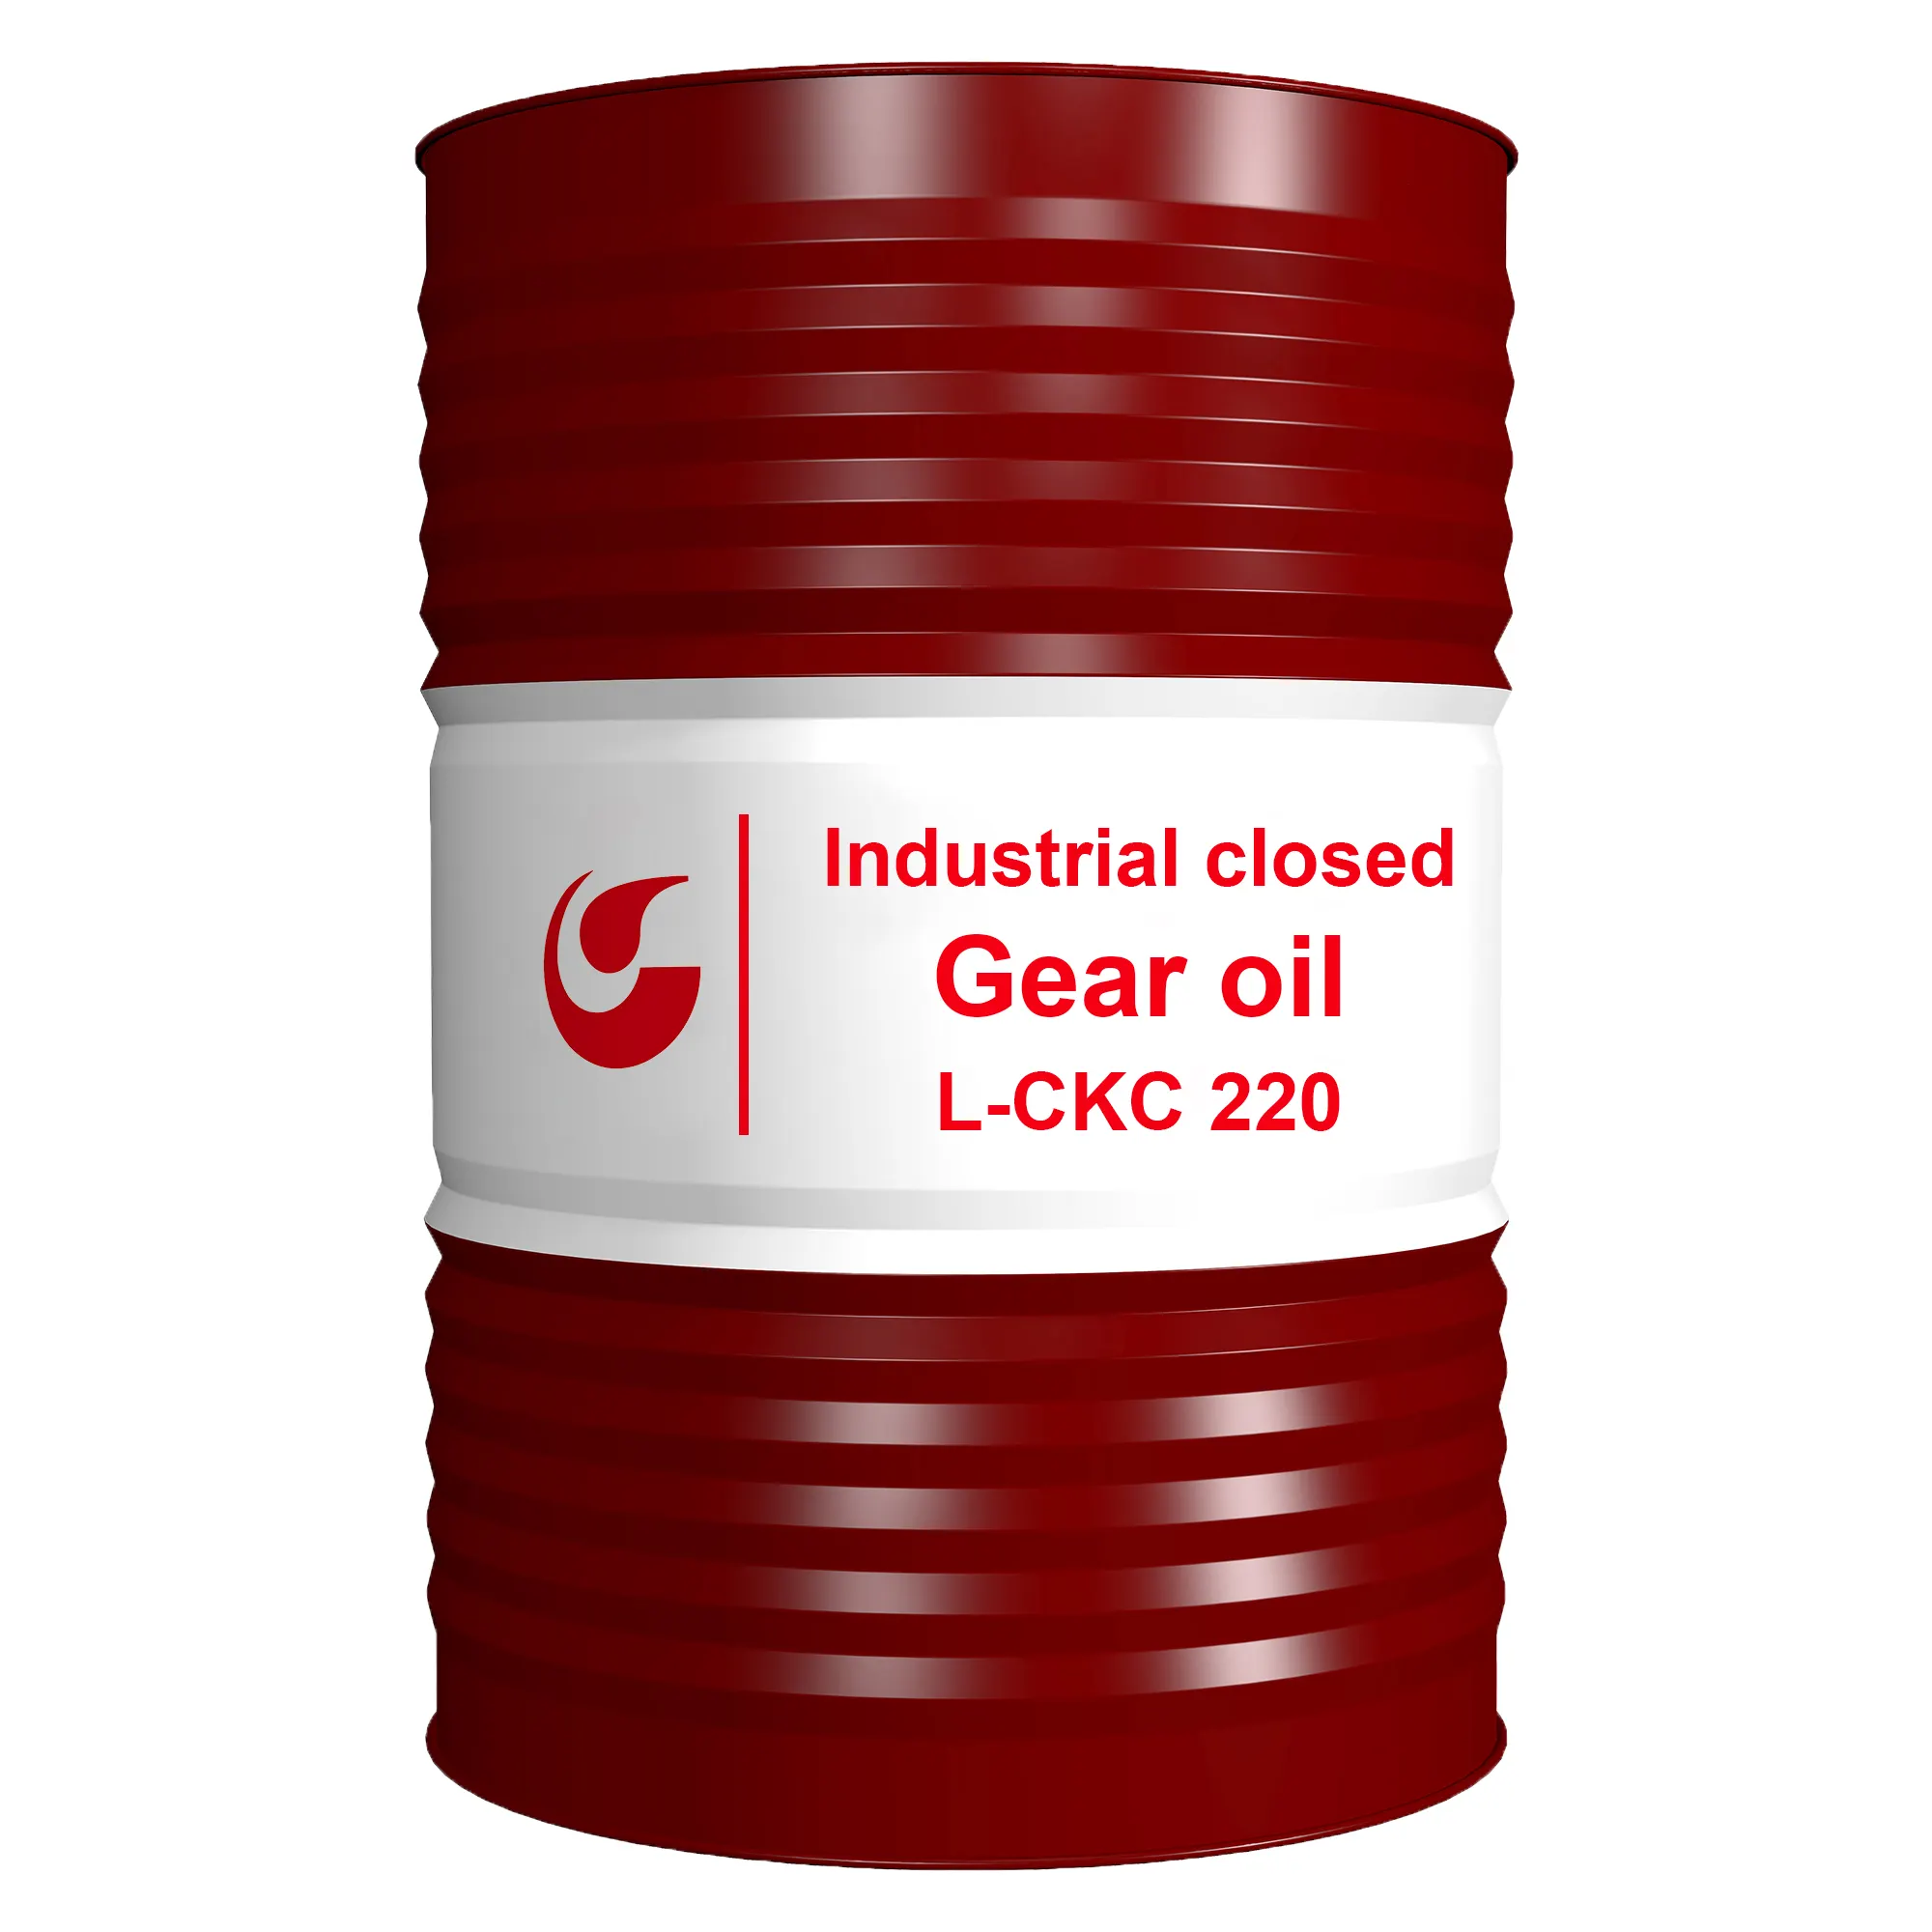 Produttore all'ingrosso di lubrificanti industriali olio L-CKC 220 riduttore di velocità olio per ingranaggi chiusi